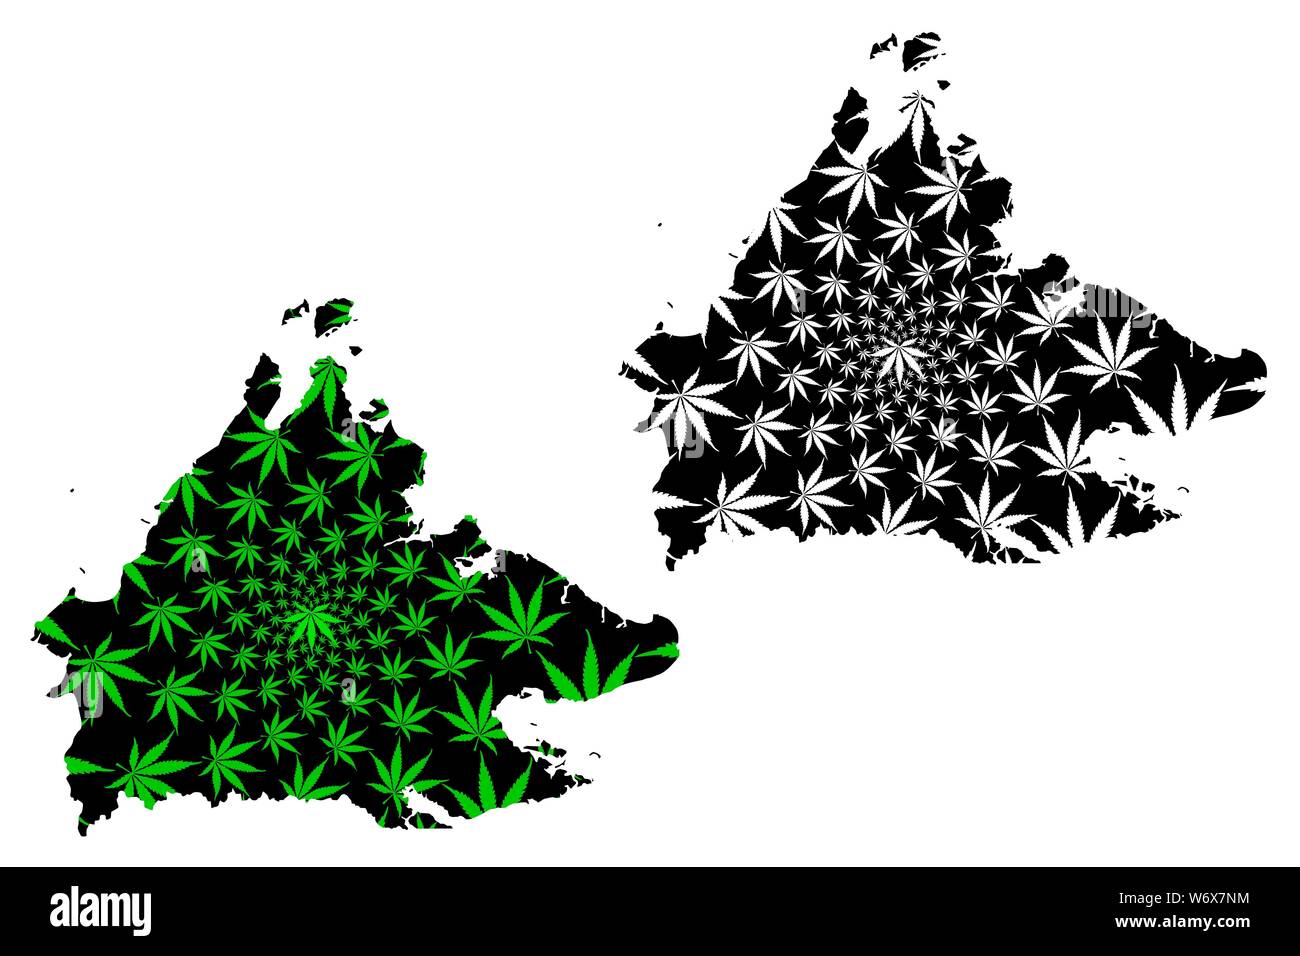 Sabah (États et territoires fédéraux de la Malaisie, Fédération de Malaisie) la carte est conçue de feuilles de cannabis vert et noir, Sabah carte fait de la marijuana Illustration de Vecteur